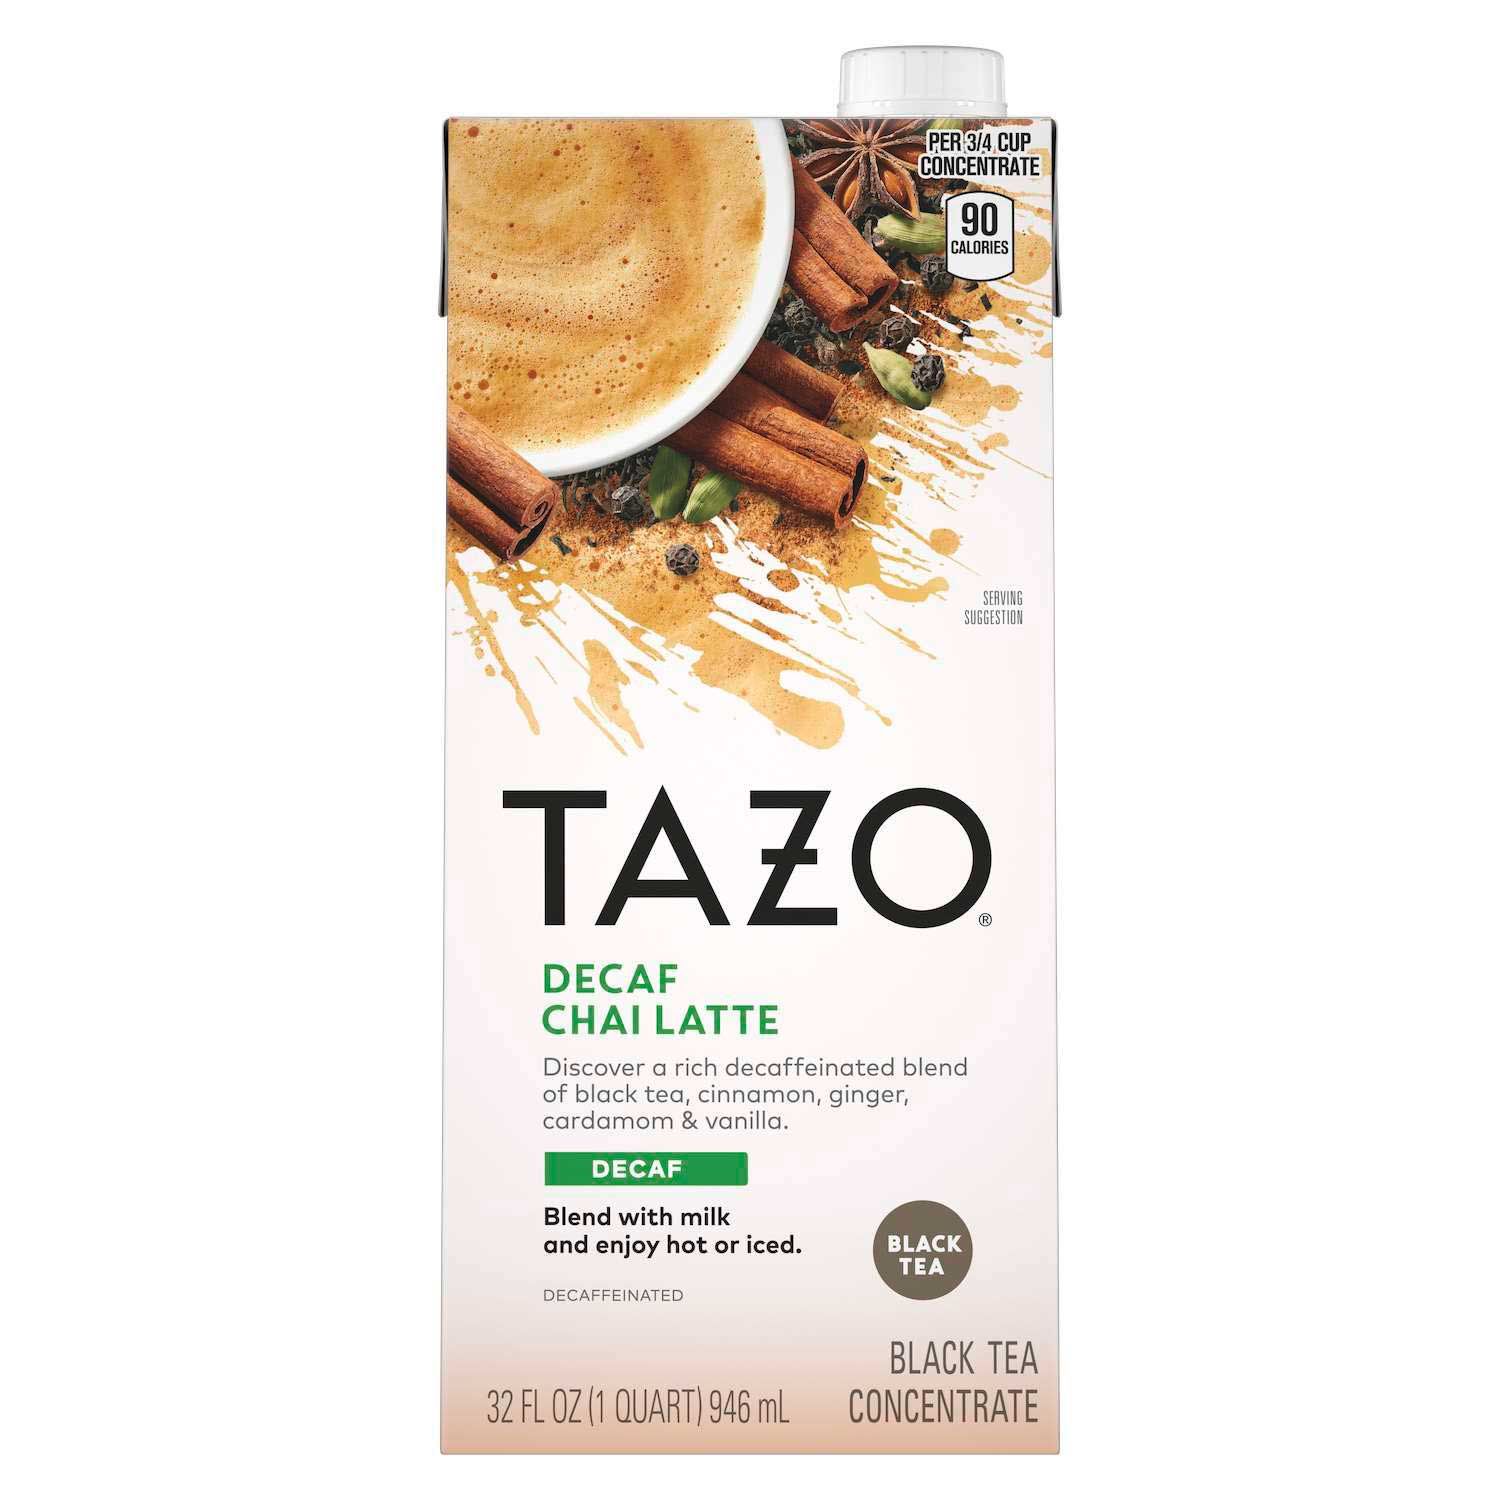 Tazo Decaf Chai Latte Tea Concentrate 1:1, 32 ounce -- 6 per case